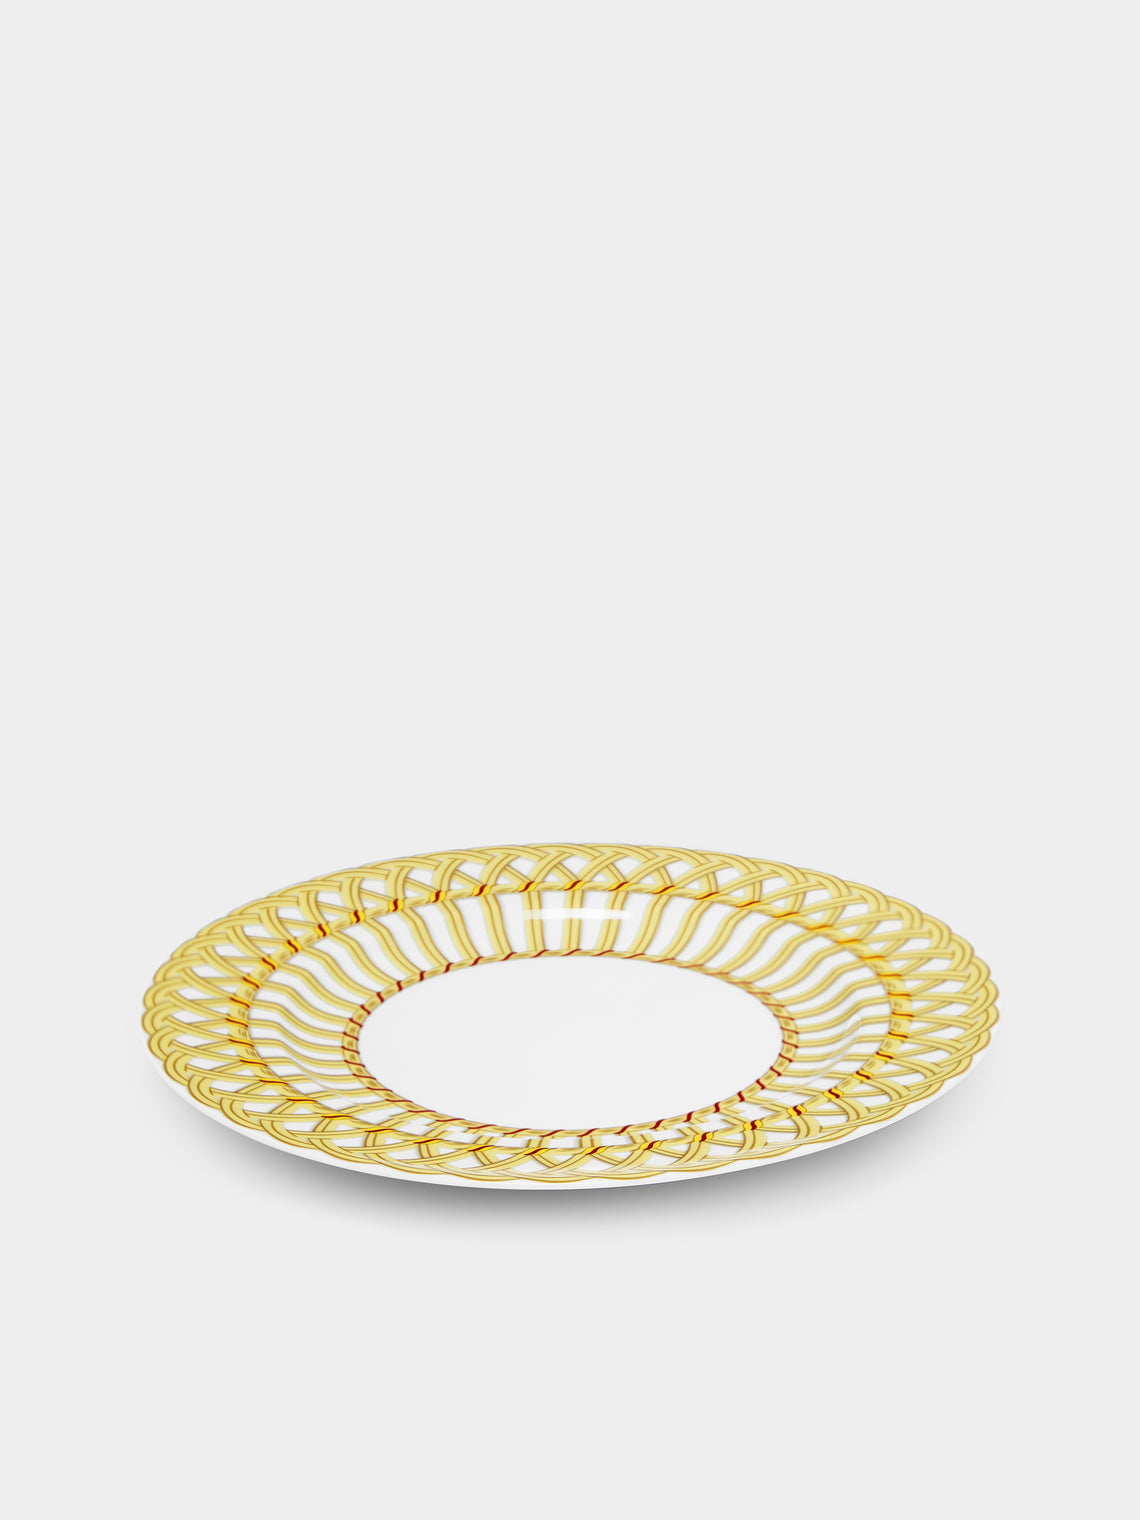 Pinto Paris - Vannerie Cottage Porcelain Dinner Plate -  - ABASK